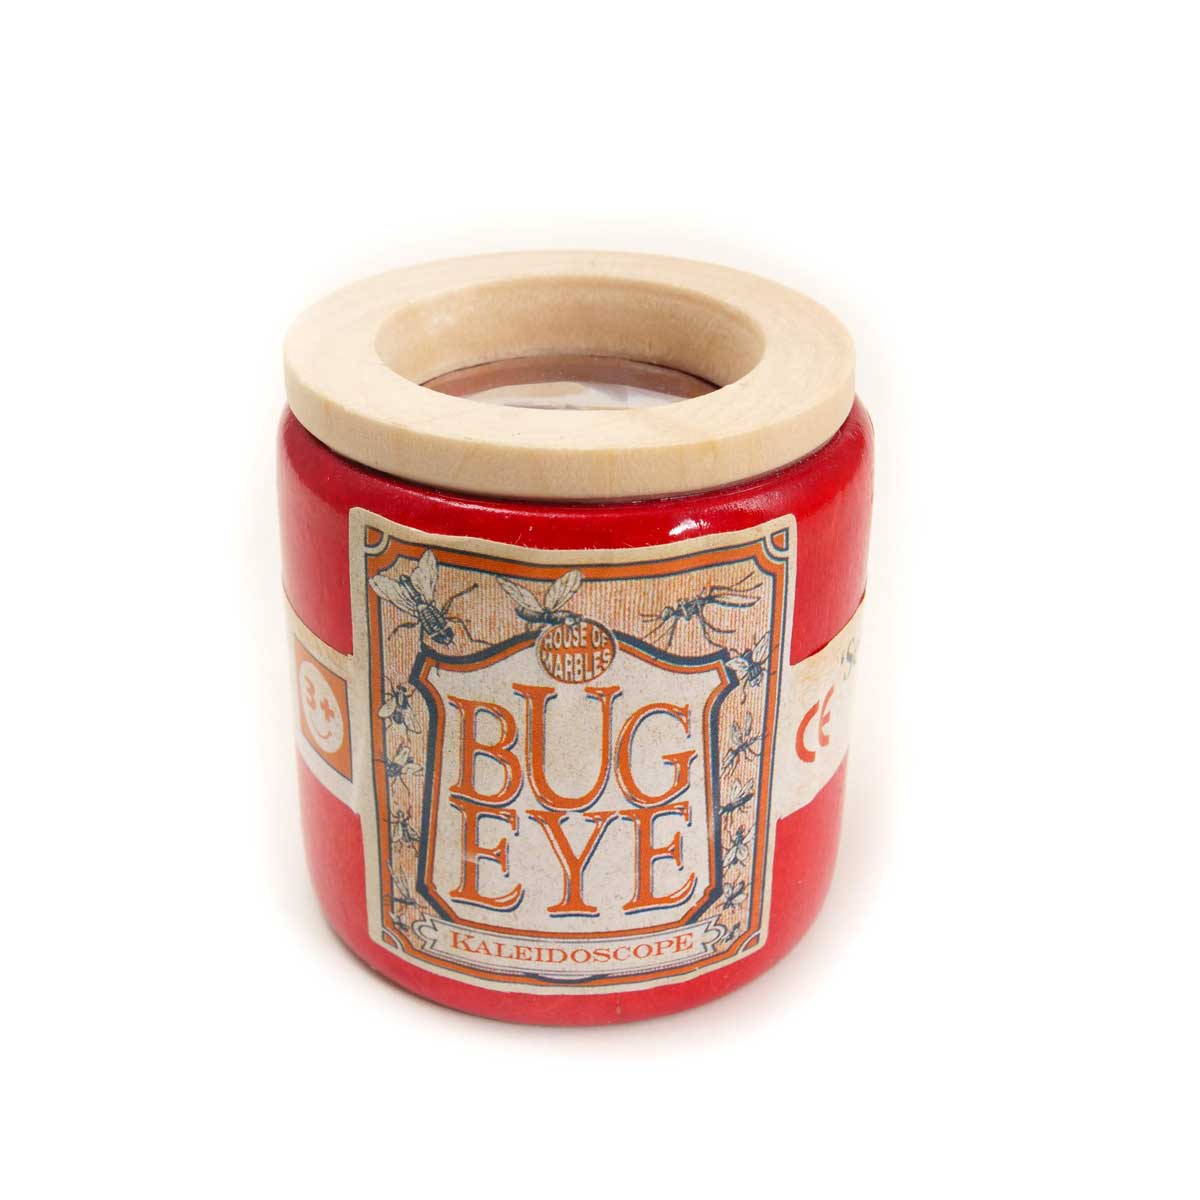 Bug Eye Wooden Kaleidoscope Glyndebourne Shop